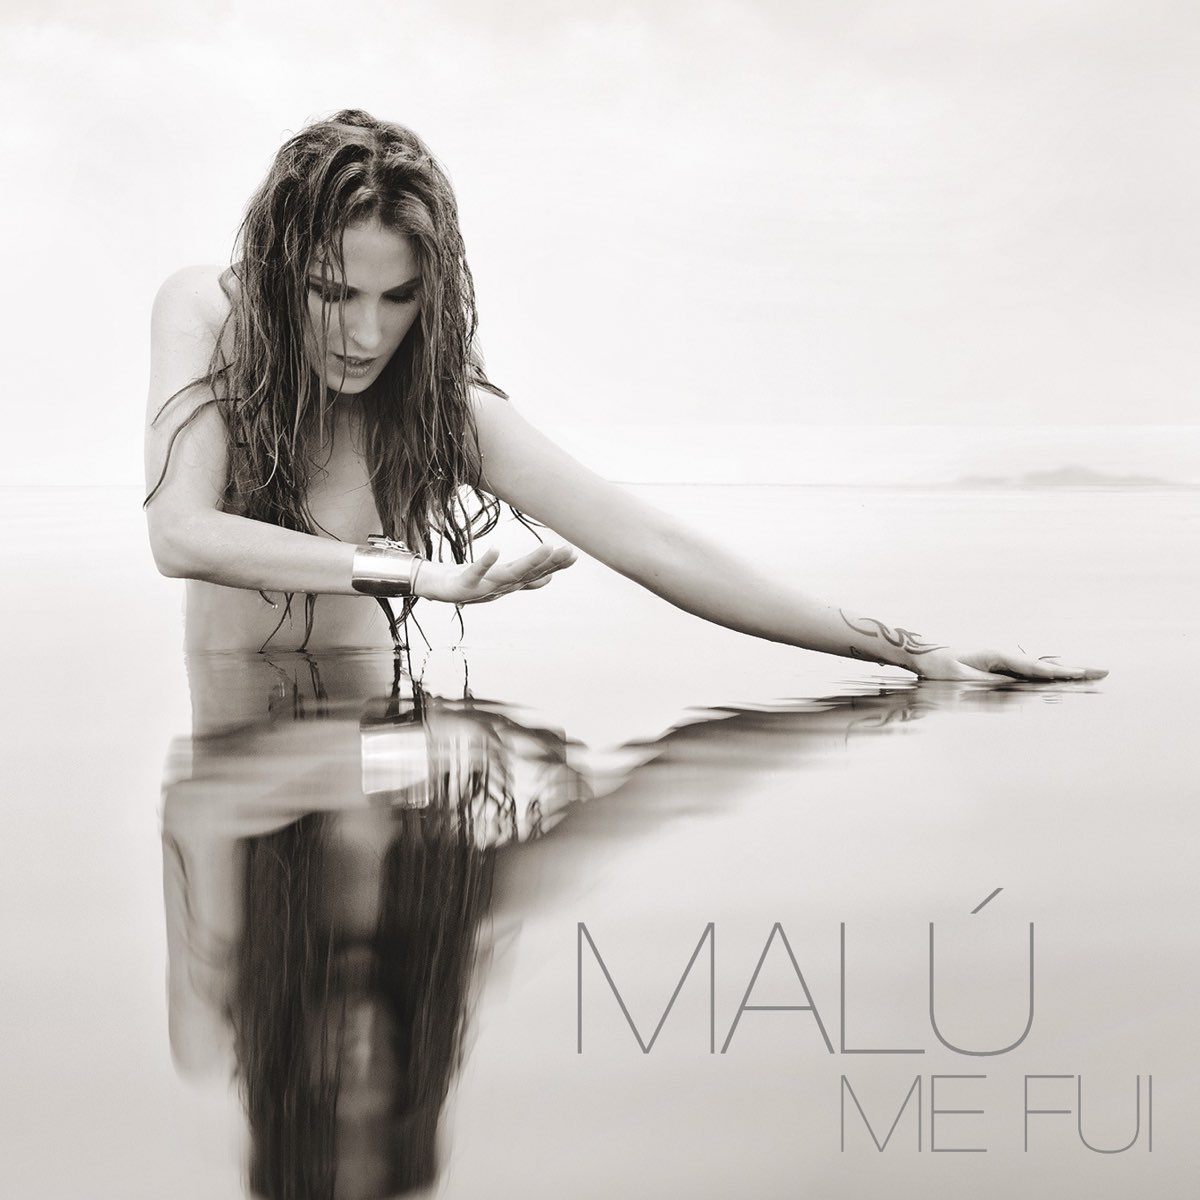 Malú — Me Fui cover artwork